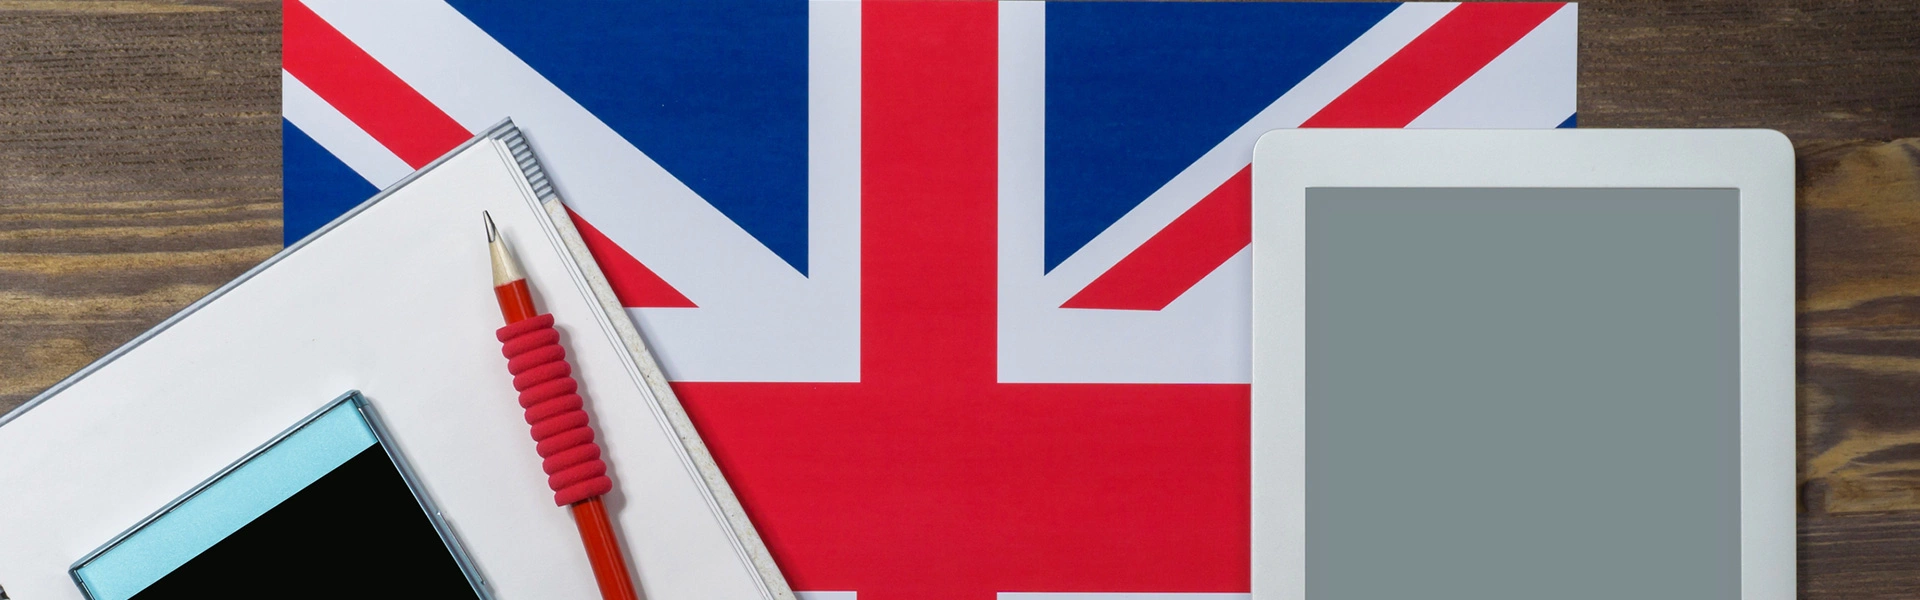 Slajd #1 - flaga Wielkiej Brytanii